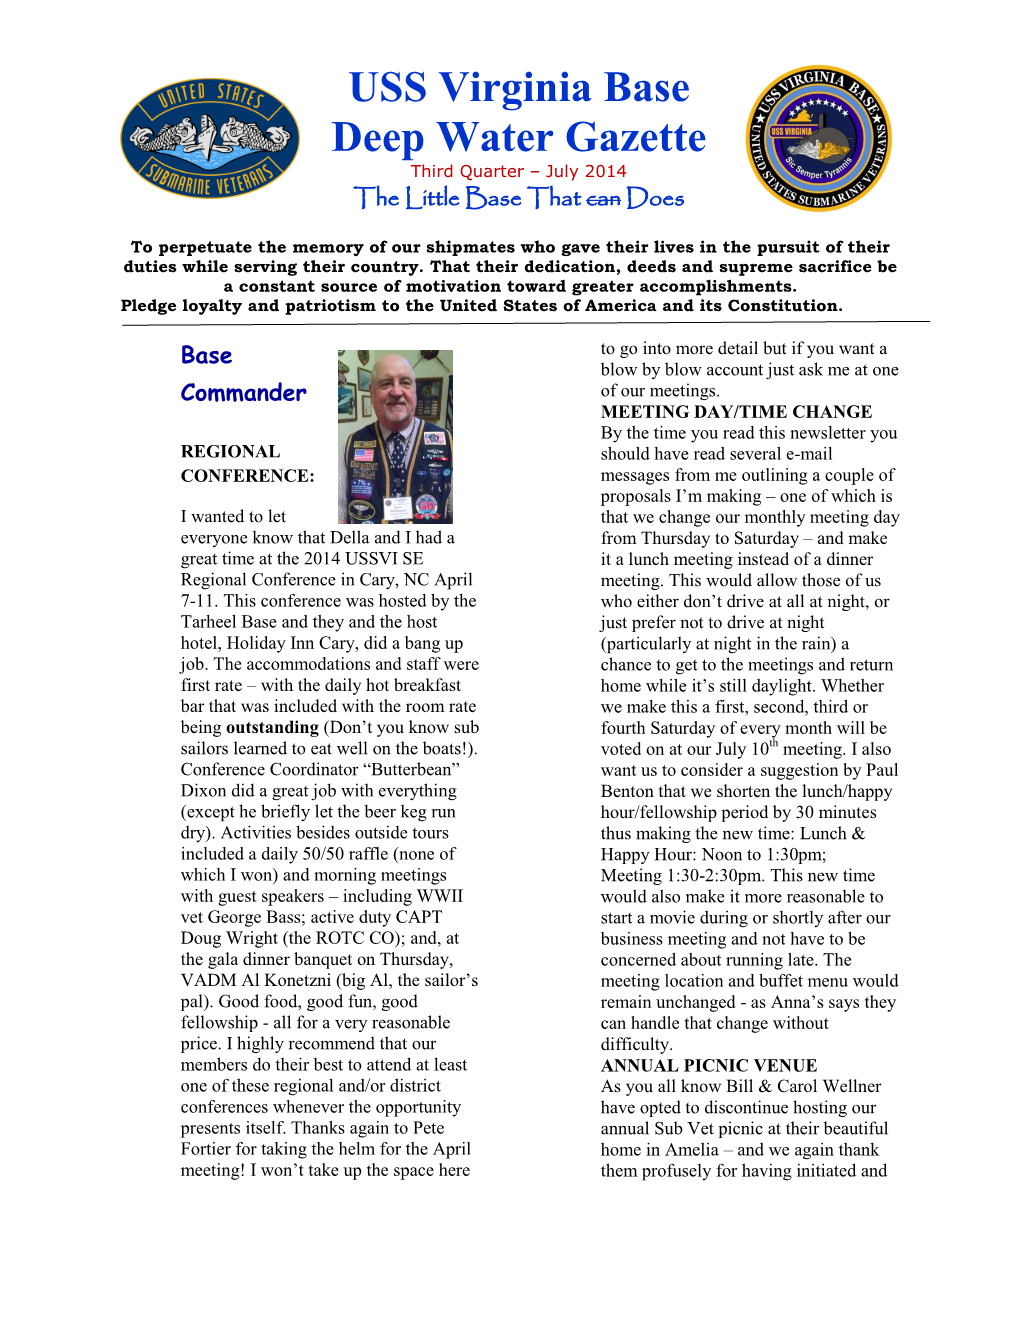 USS Virginia Base Deep Water Gazette Third Quarter – July 2014